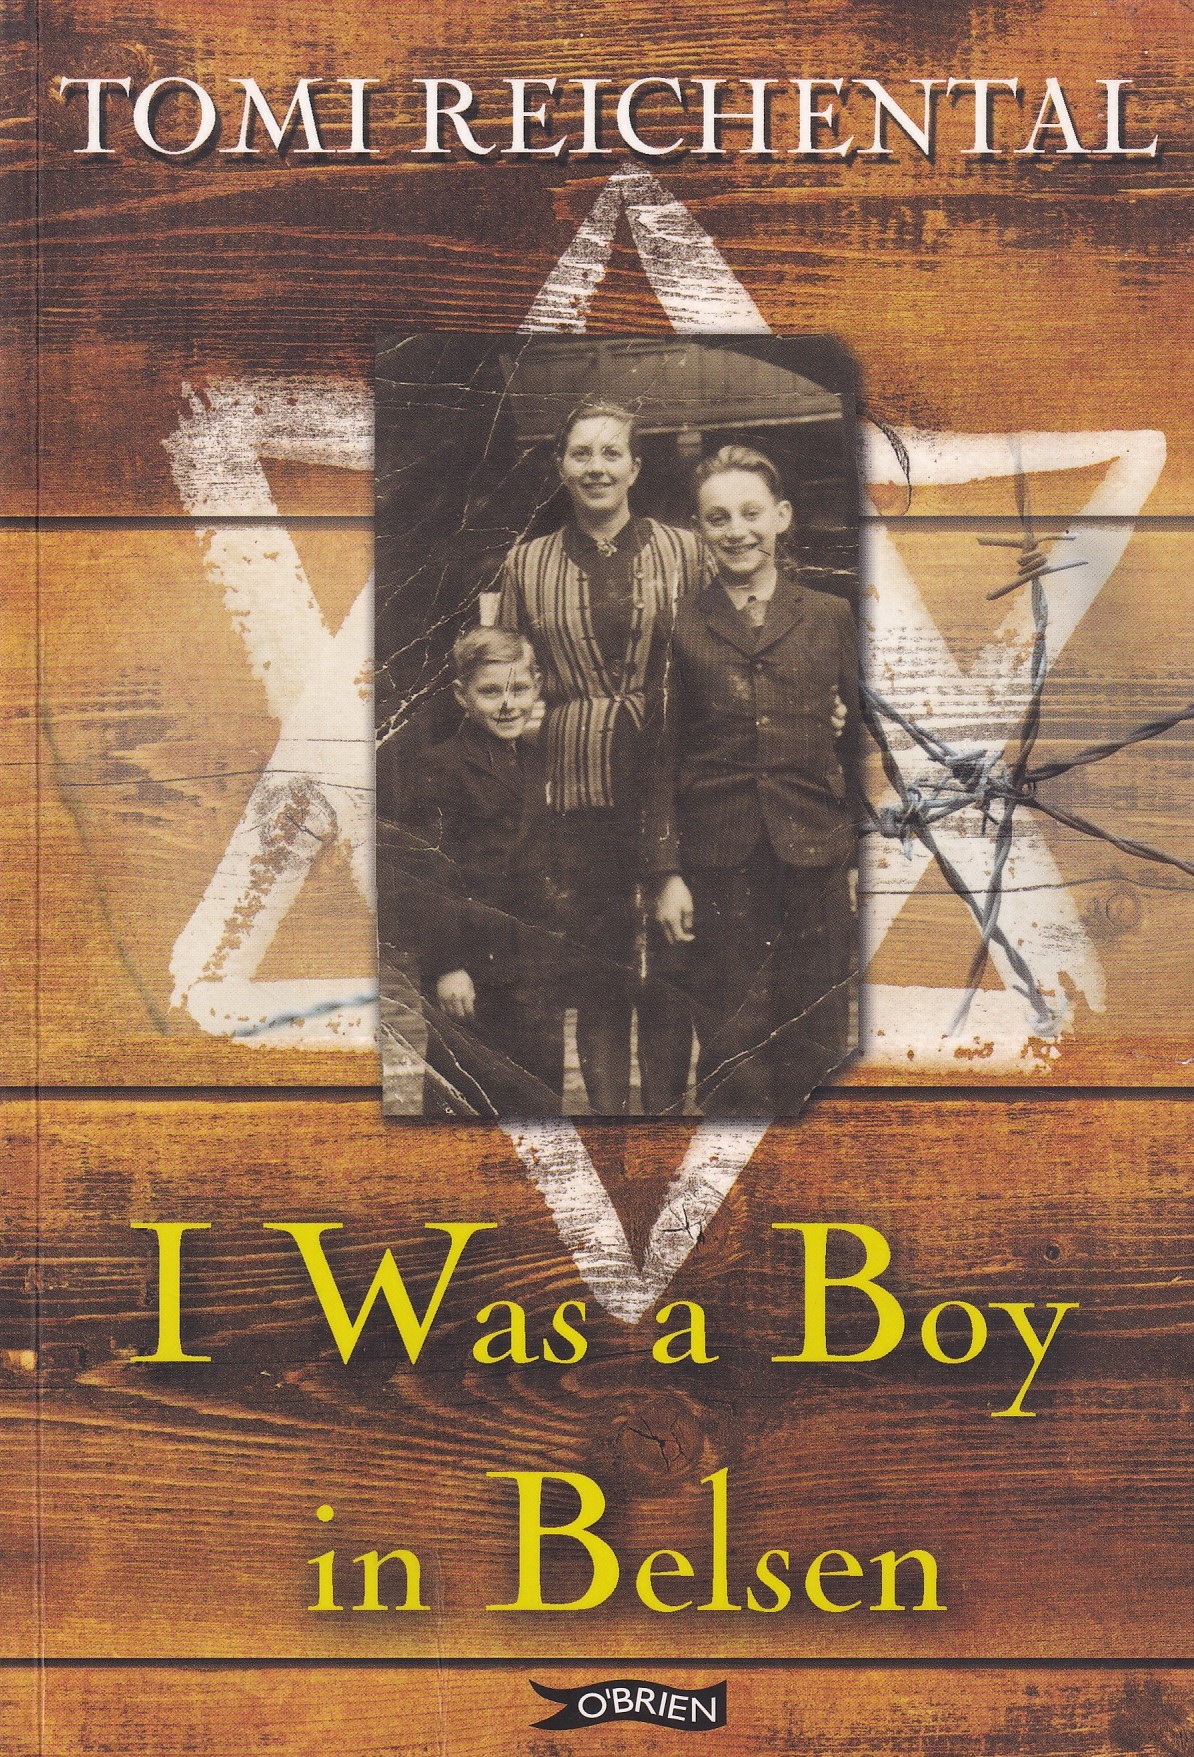 I was a Boy in Belsen by Tomi Reichental